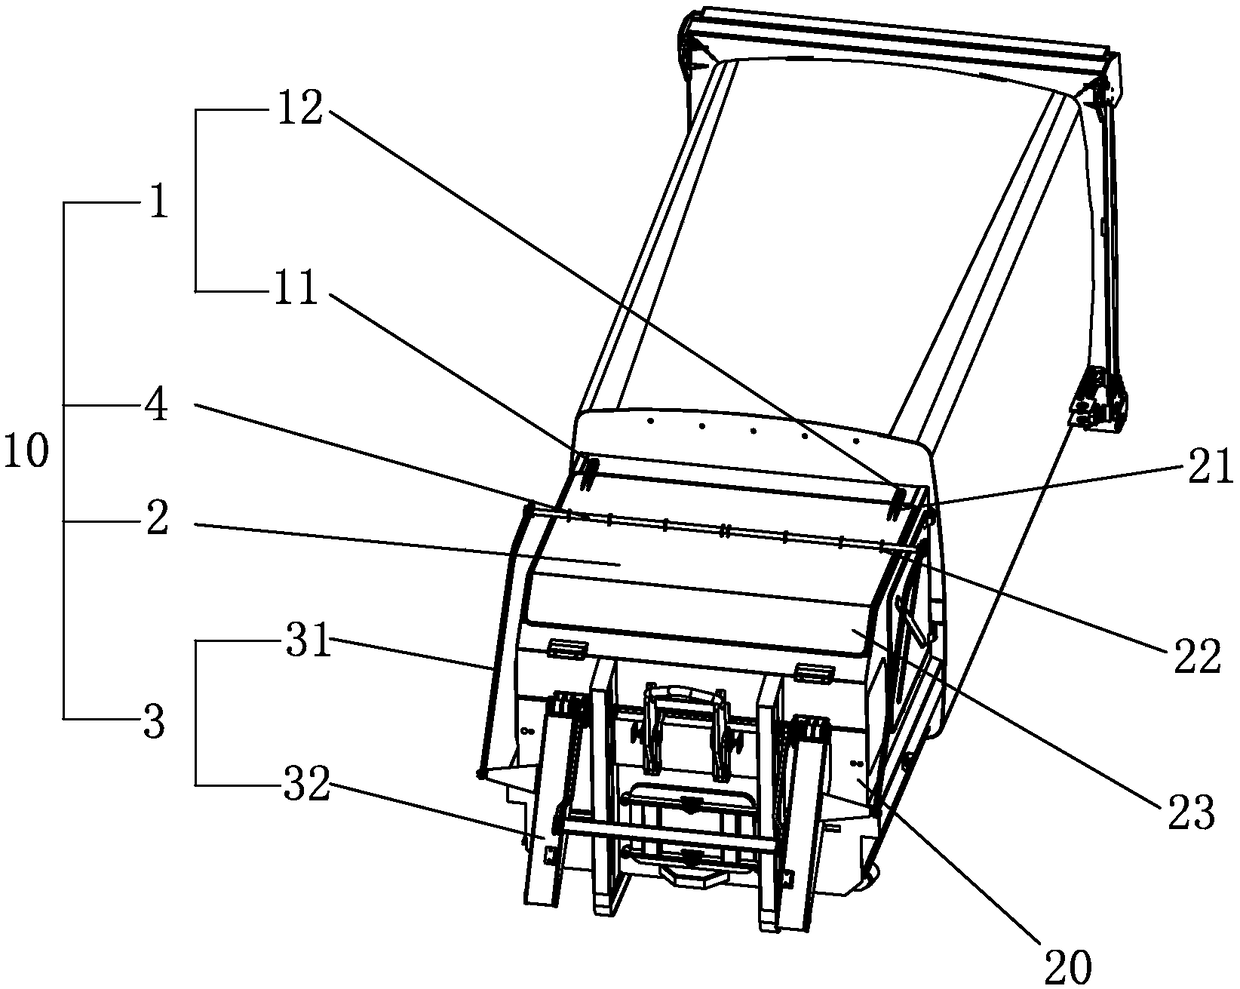 Door opening mechanism of waste compaction box